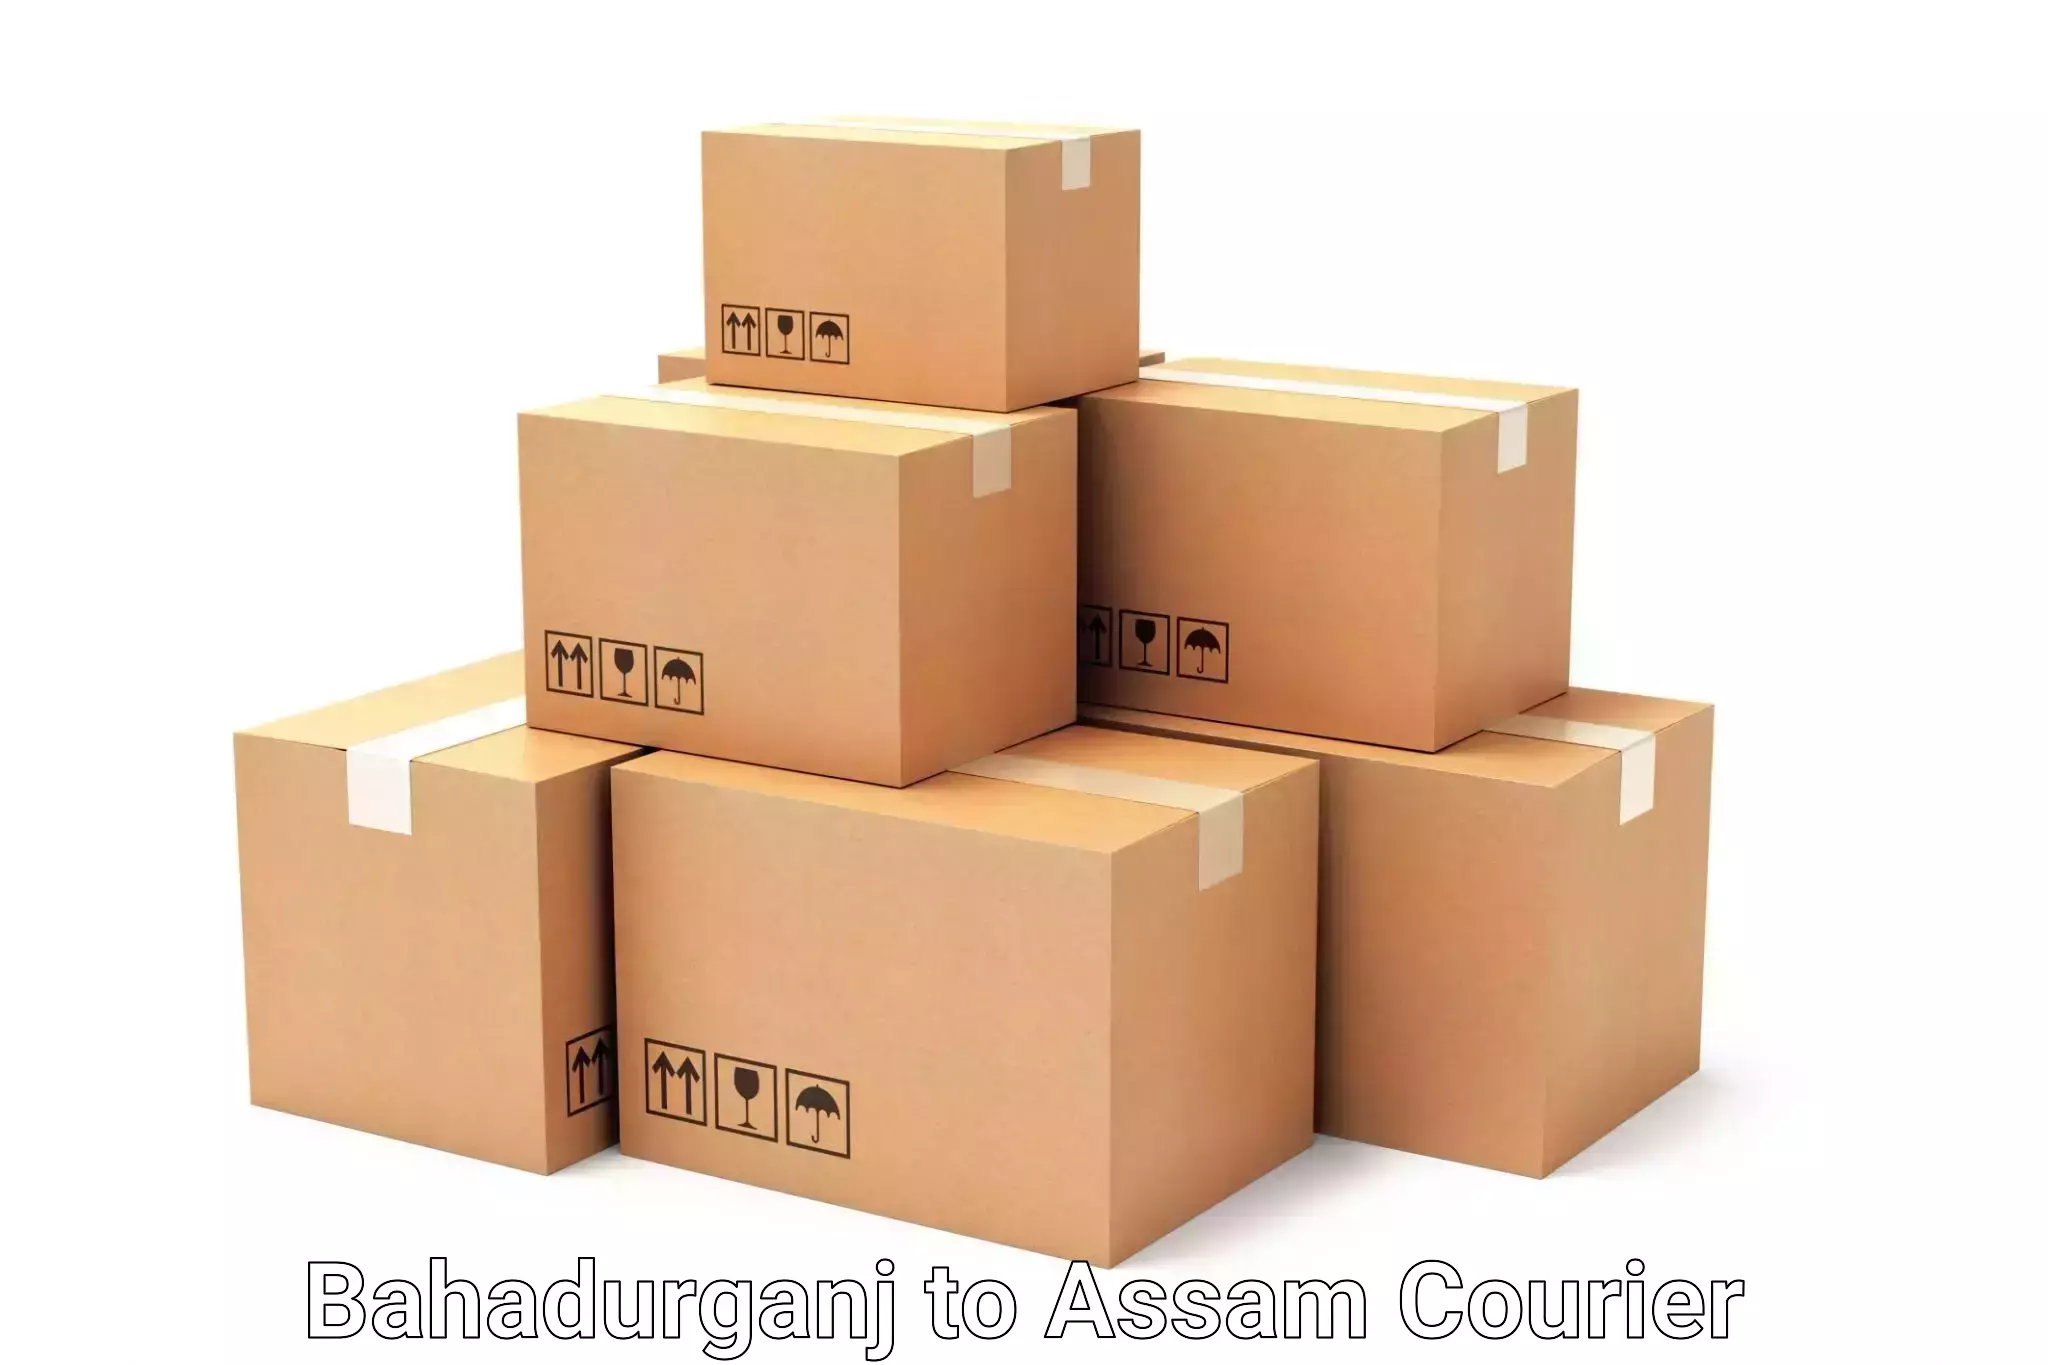 Customized luggage delivery Bahadurganj to Kabuganj